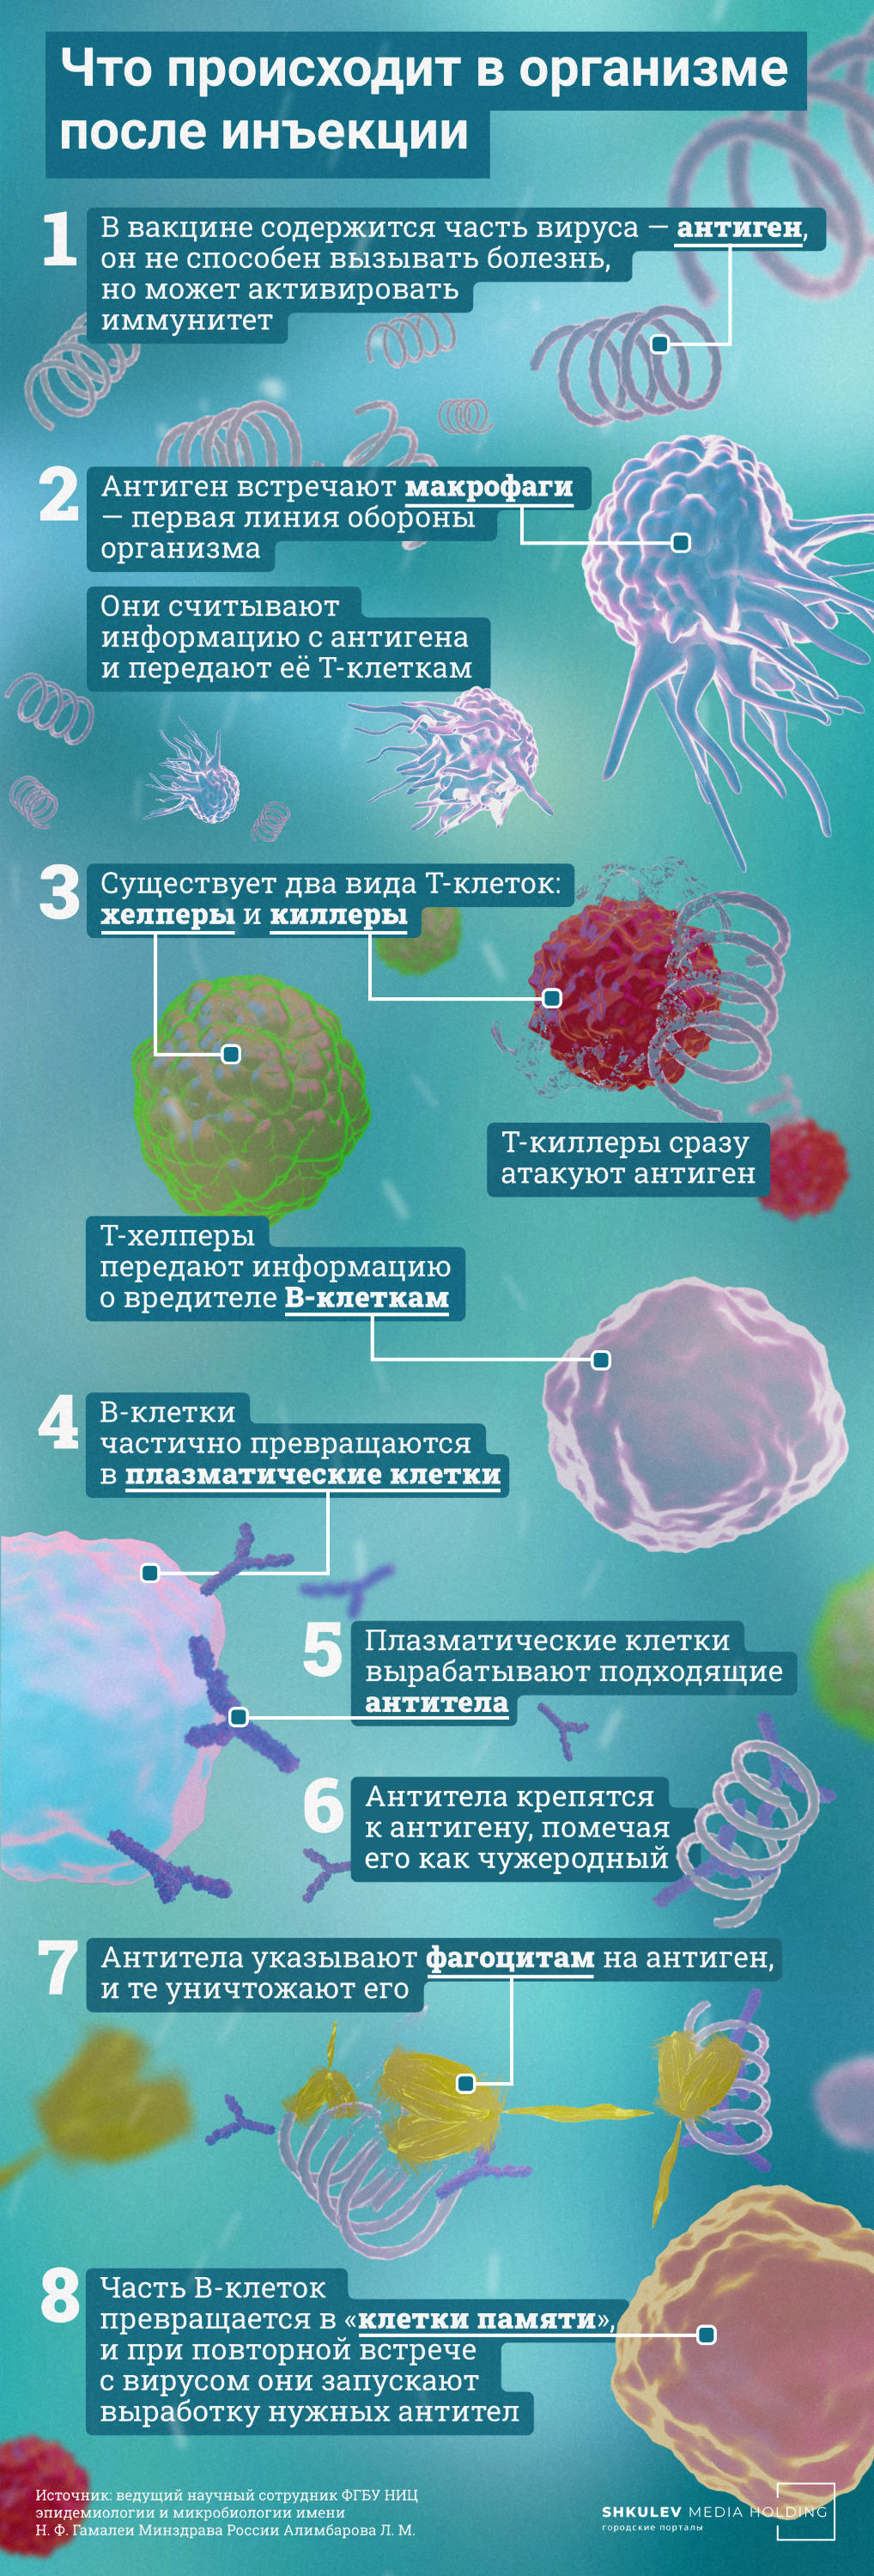 Иммунитет в организме вырабатывается в несколько этапов